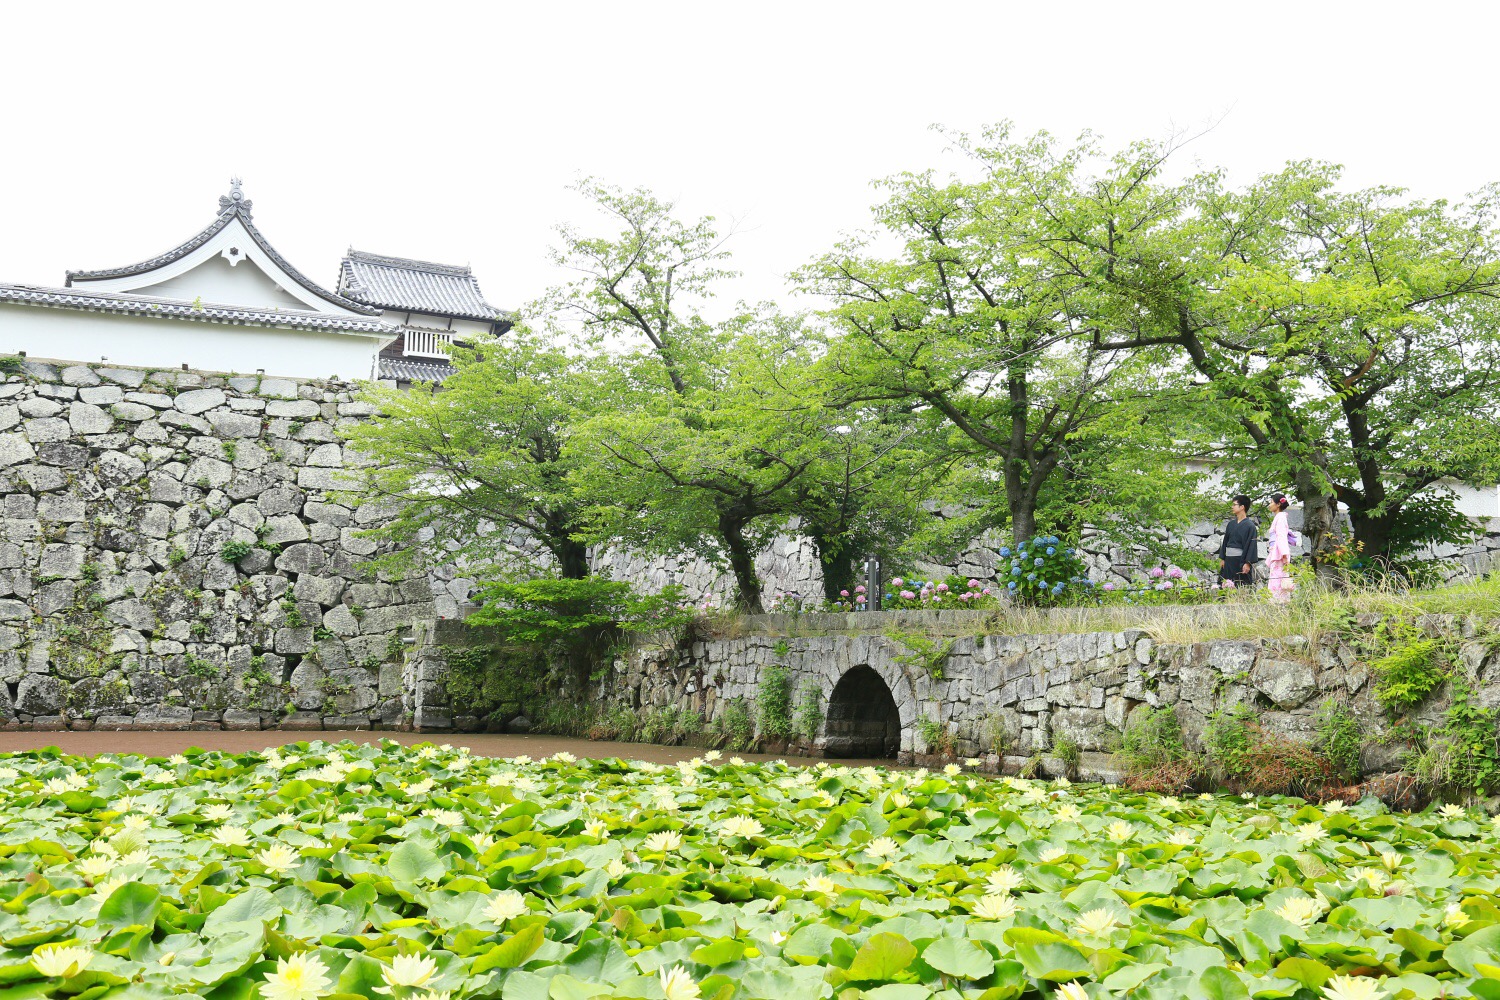 城跡 福岡 福岡城跡に残された、一段と高い天守台から福岡の街を眺める【九州縦断秋旅行記⑩】